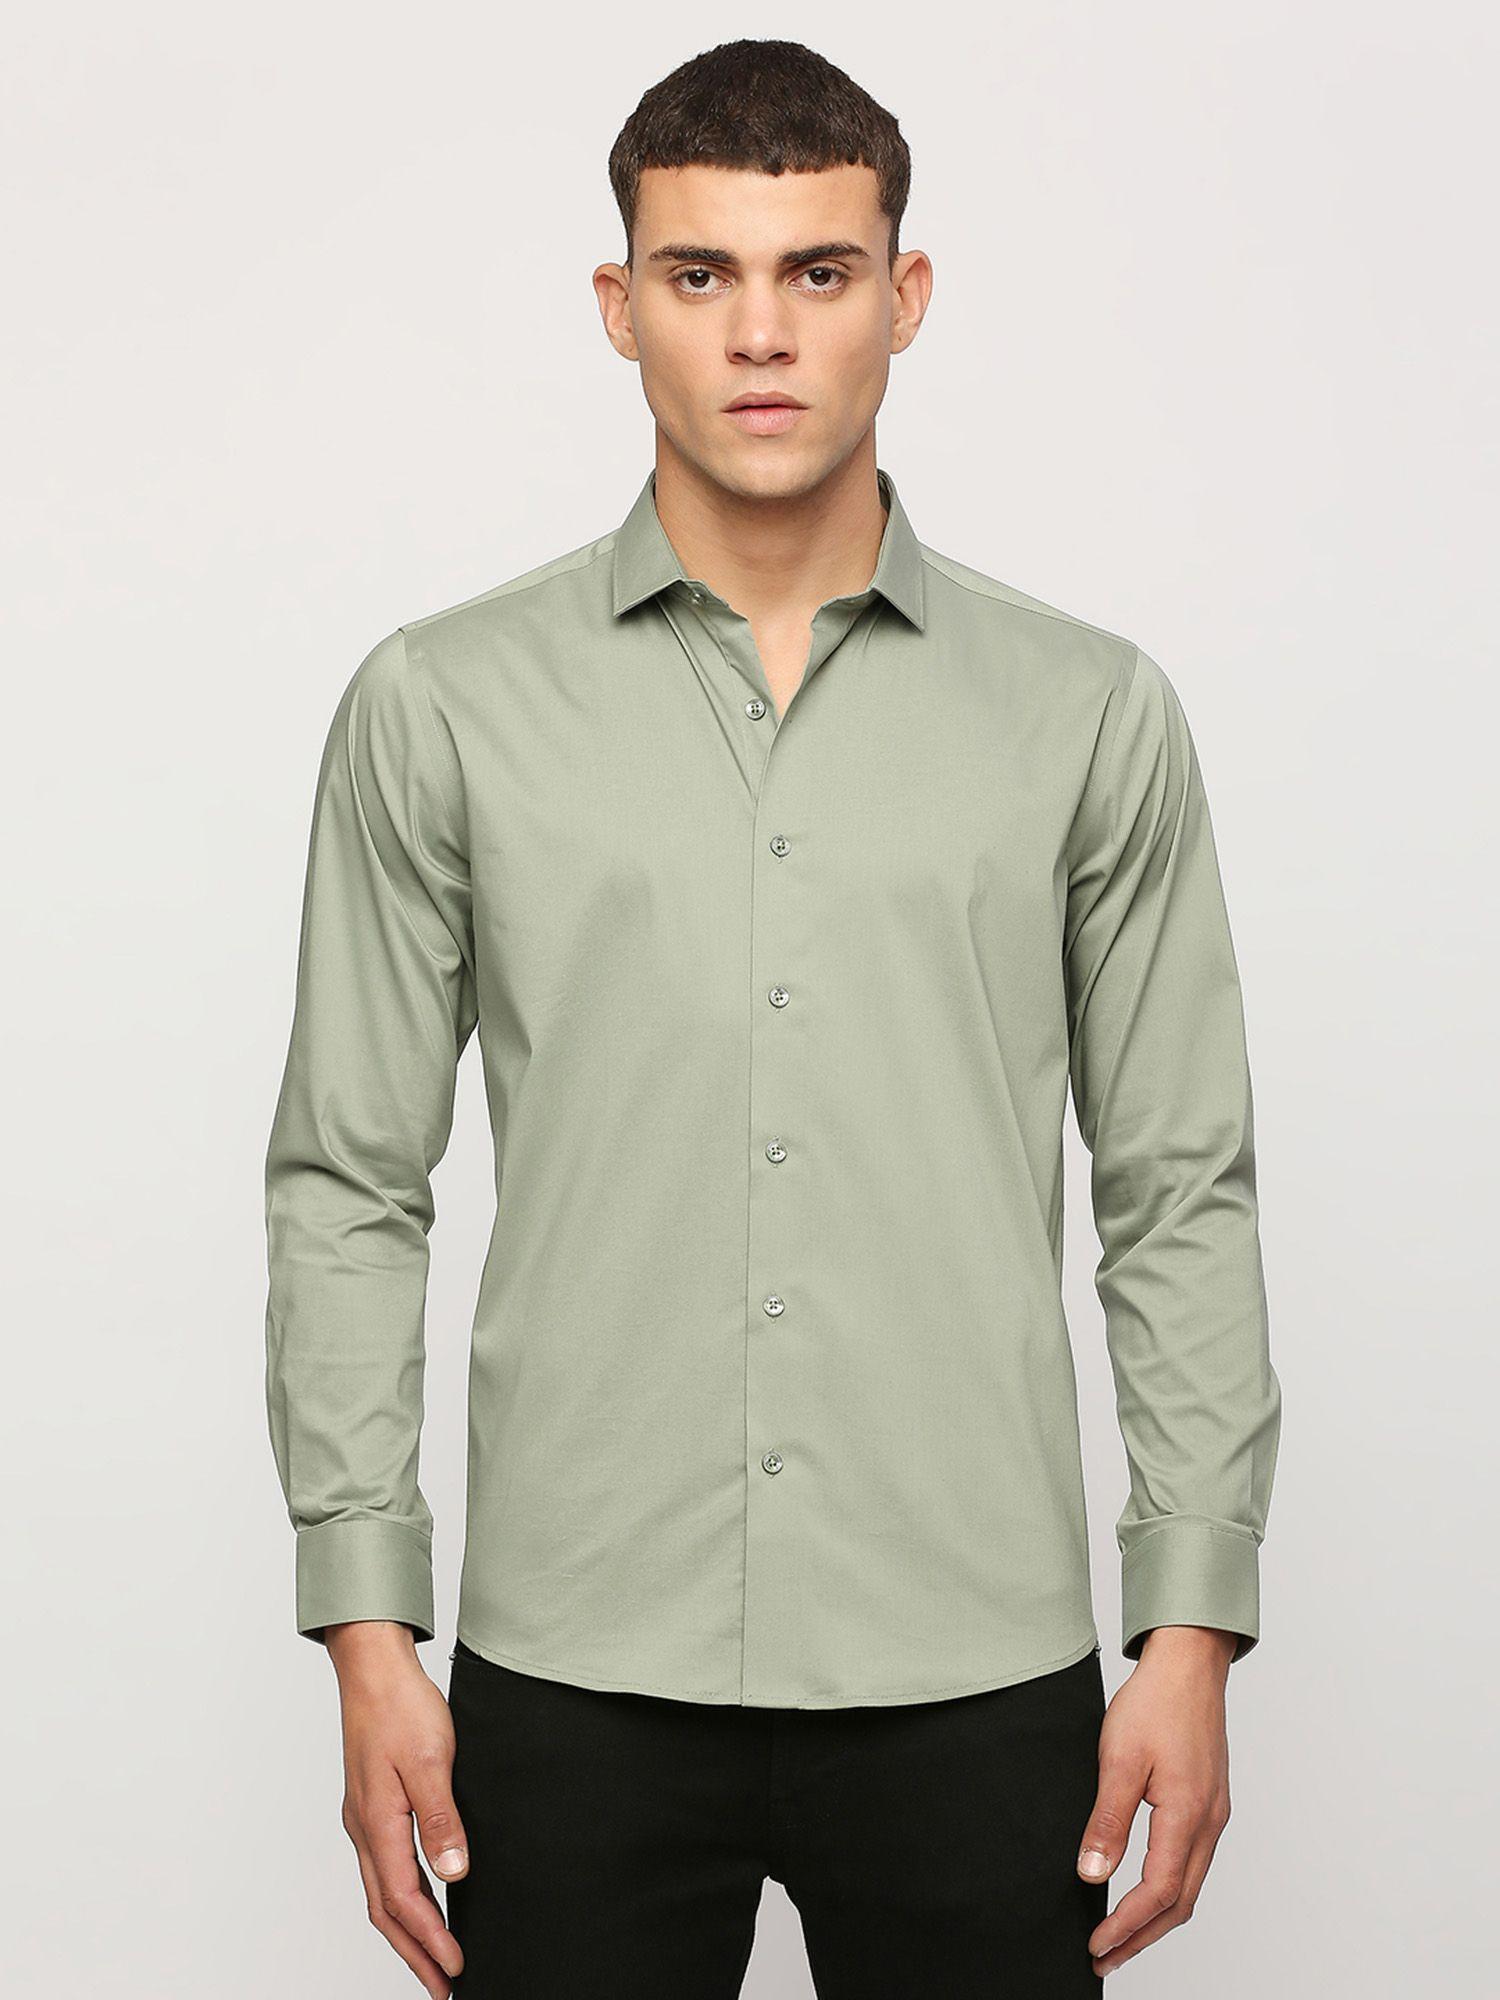 olive-full-sleeves-shirt